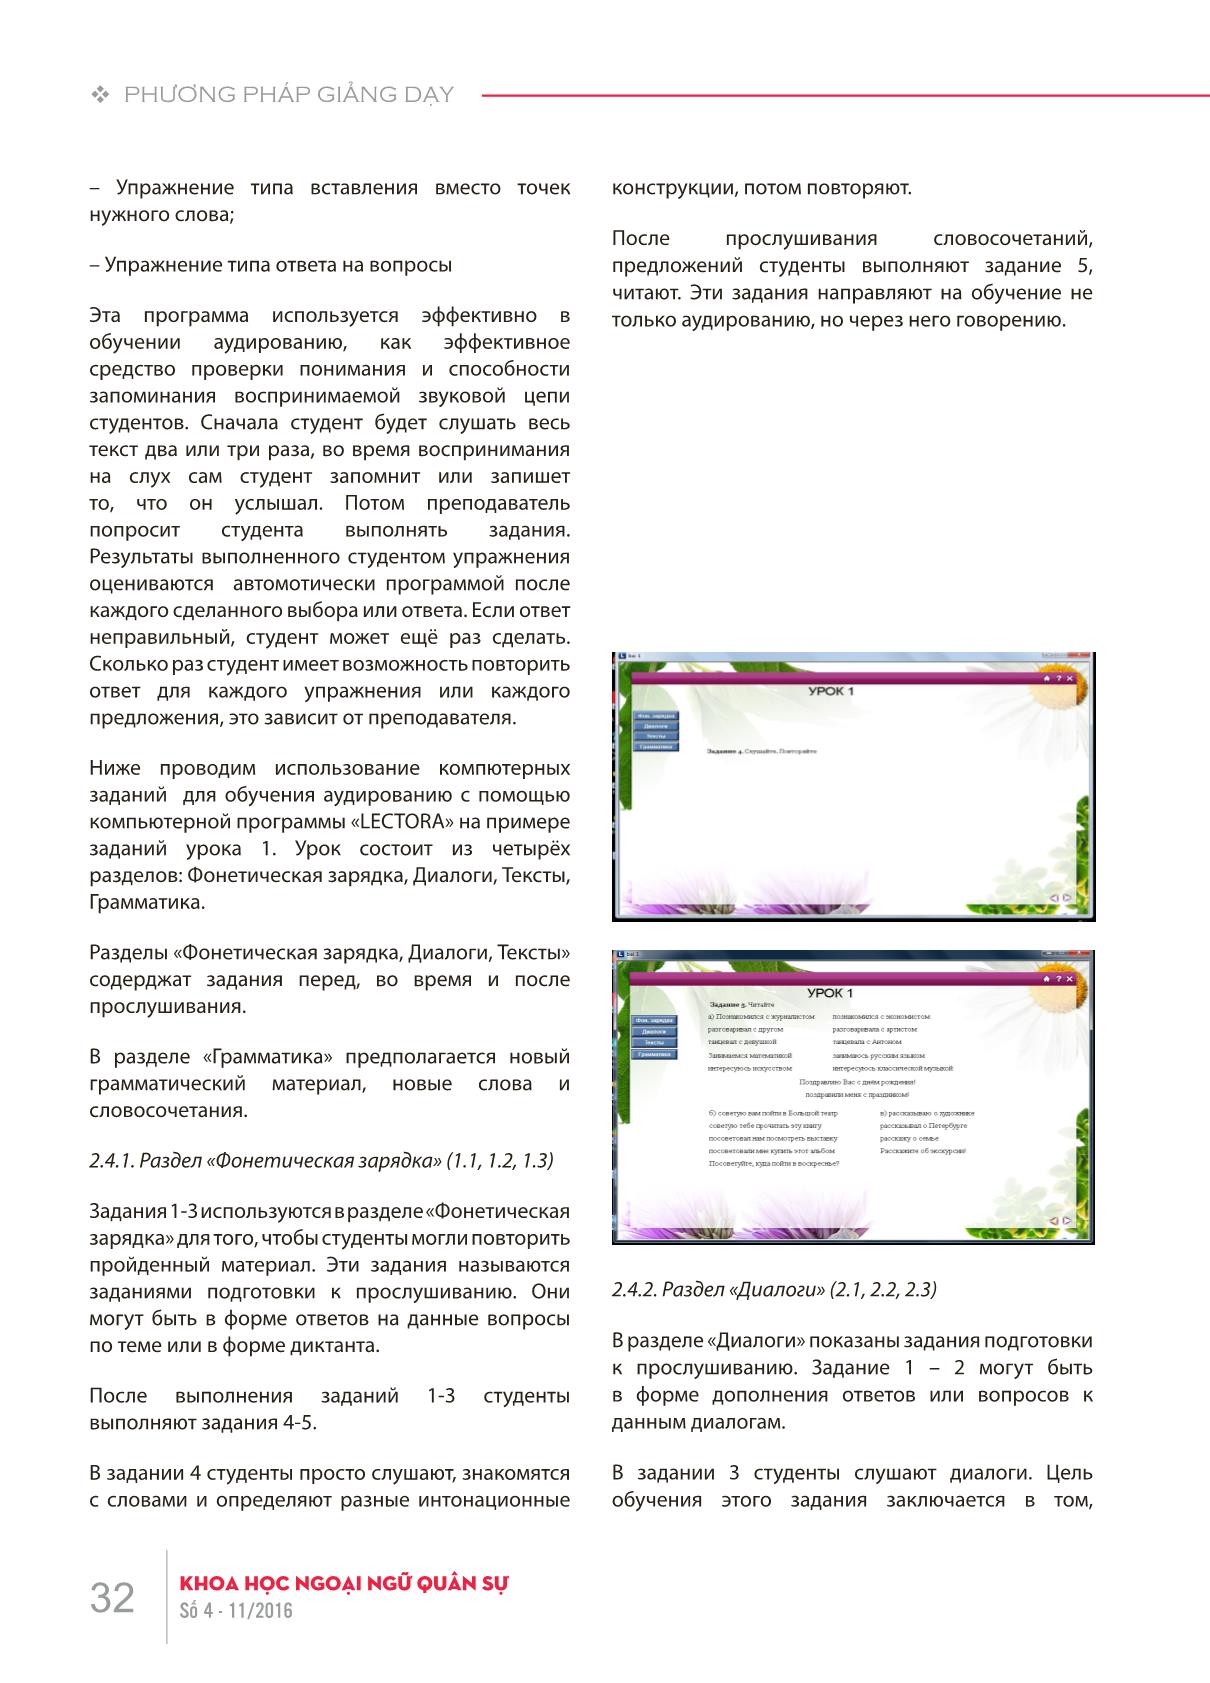 Xây dựng bài tập nghe trên máy tính cho học viên tiếng Nga giai đoạn cơ sở tại Học viện Khoa học Quân sự theo giáo trình “Đường đến nước Nga II” trang 4